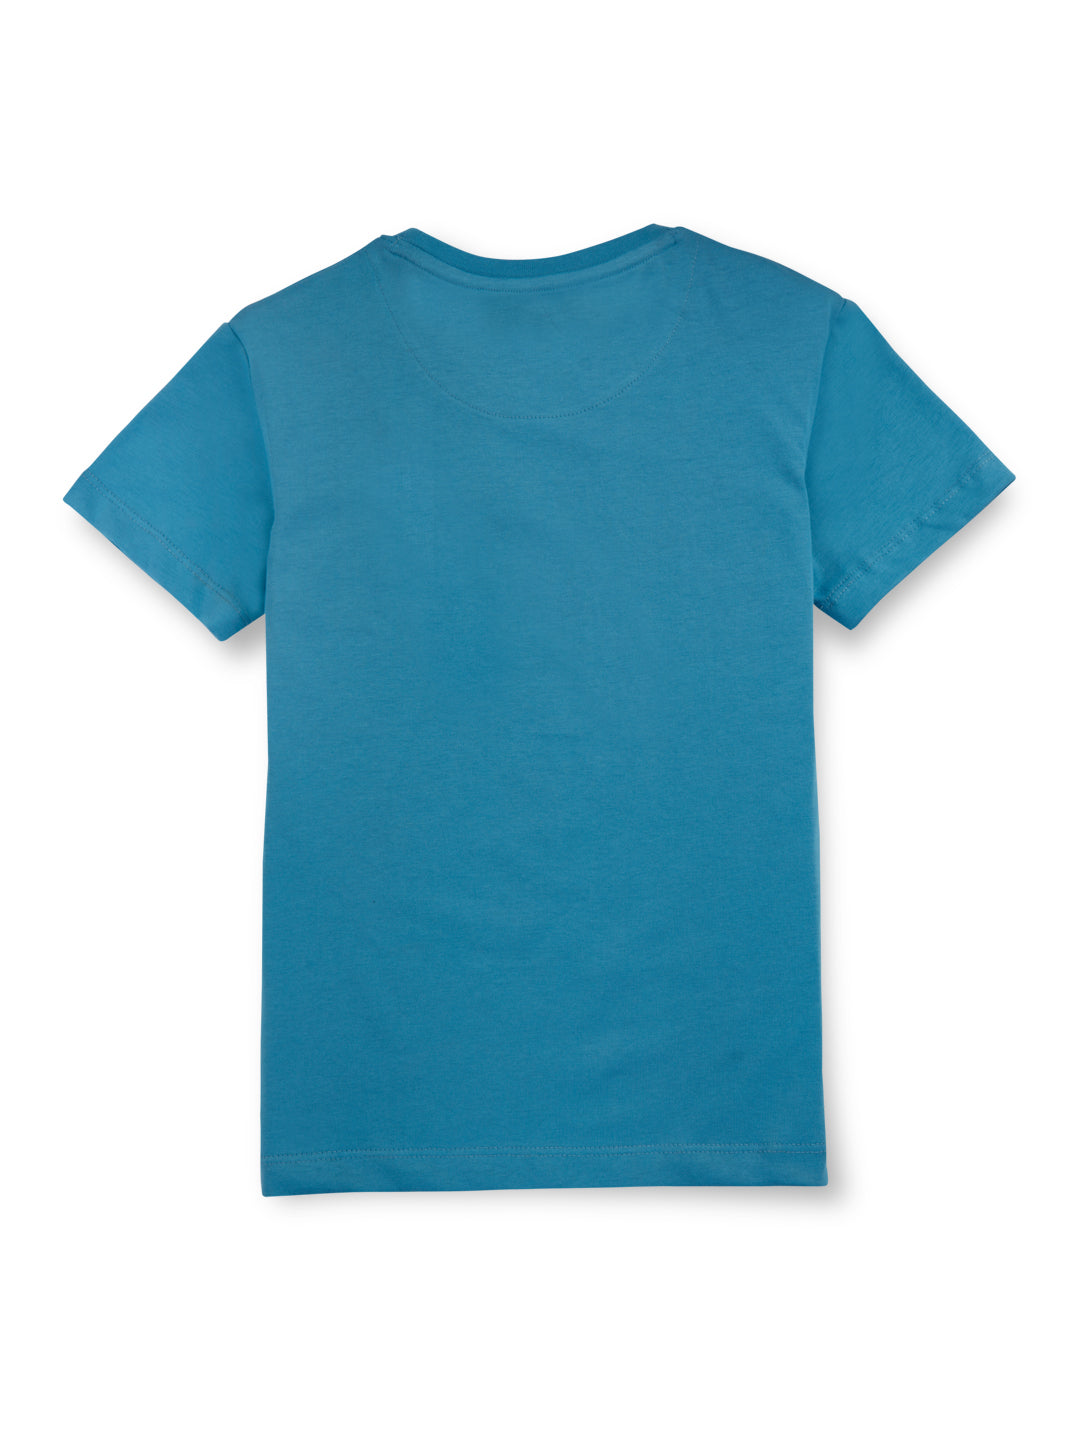 Boys Blue Biker Roadies Cotton Round Neck Half Sleeve T-Shirt